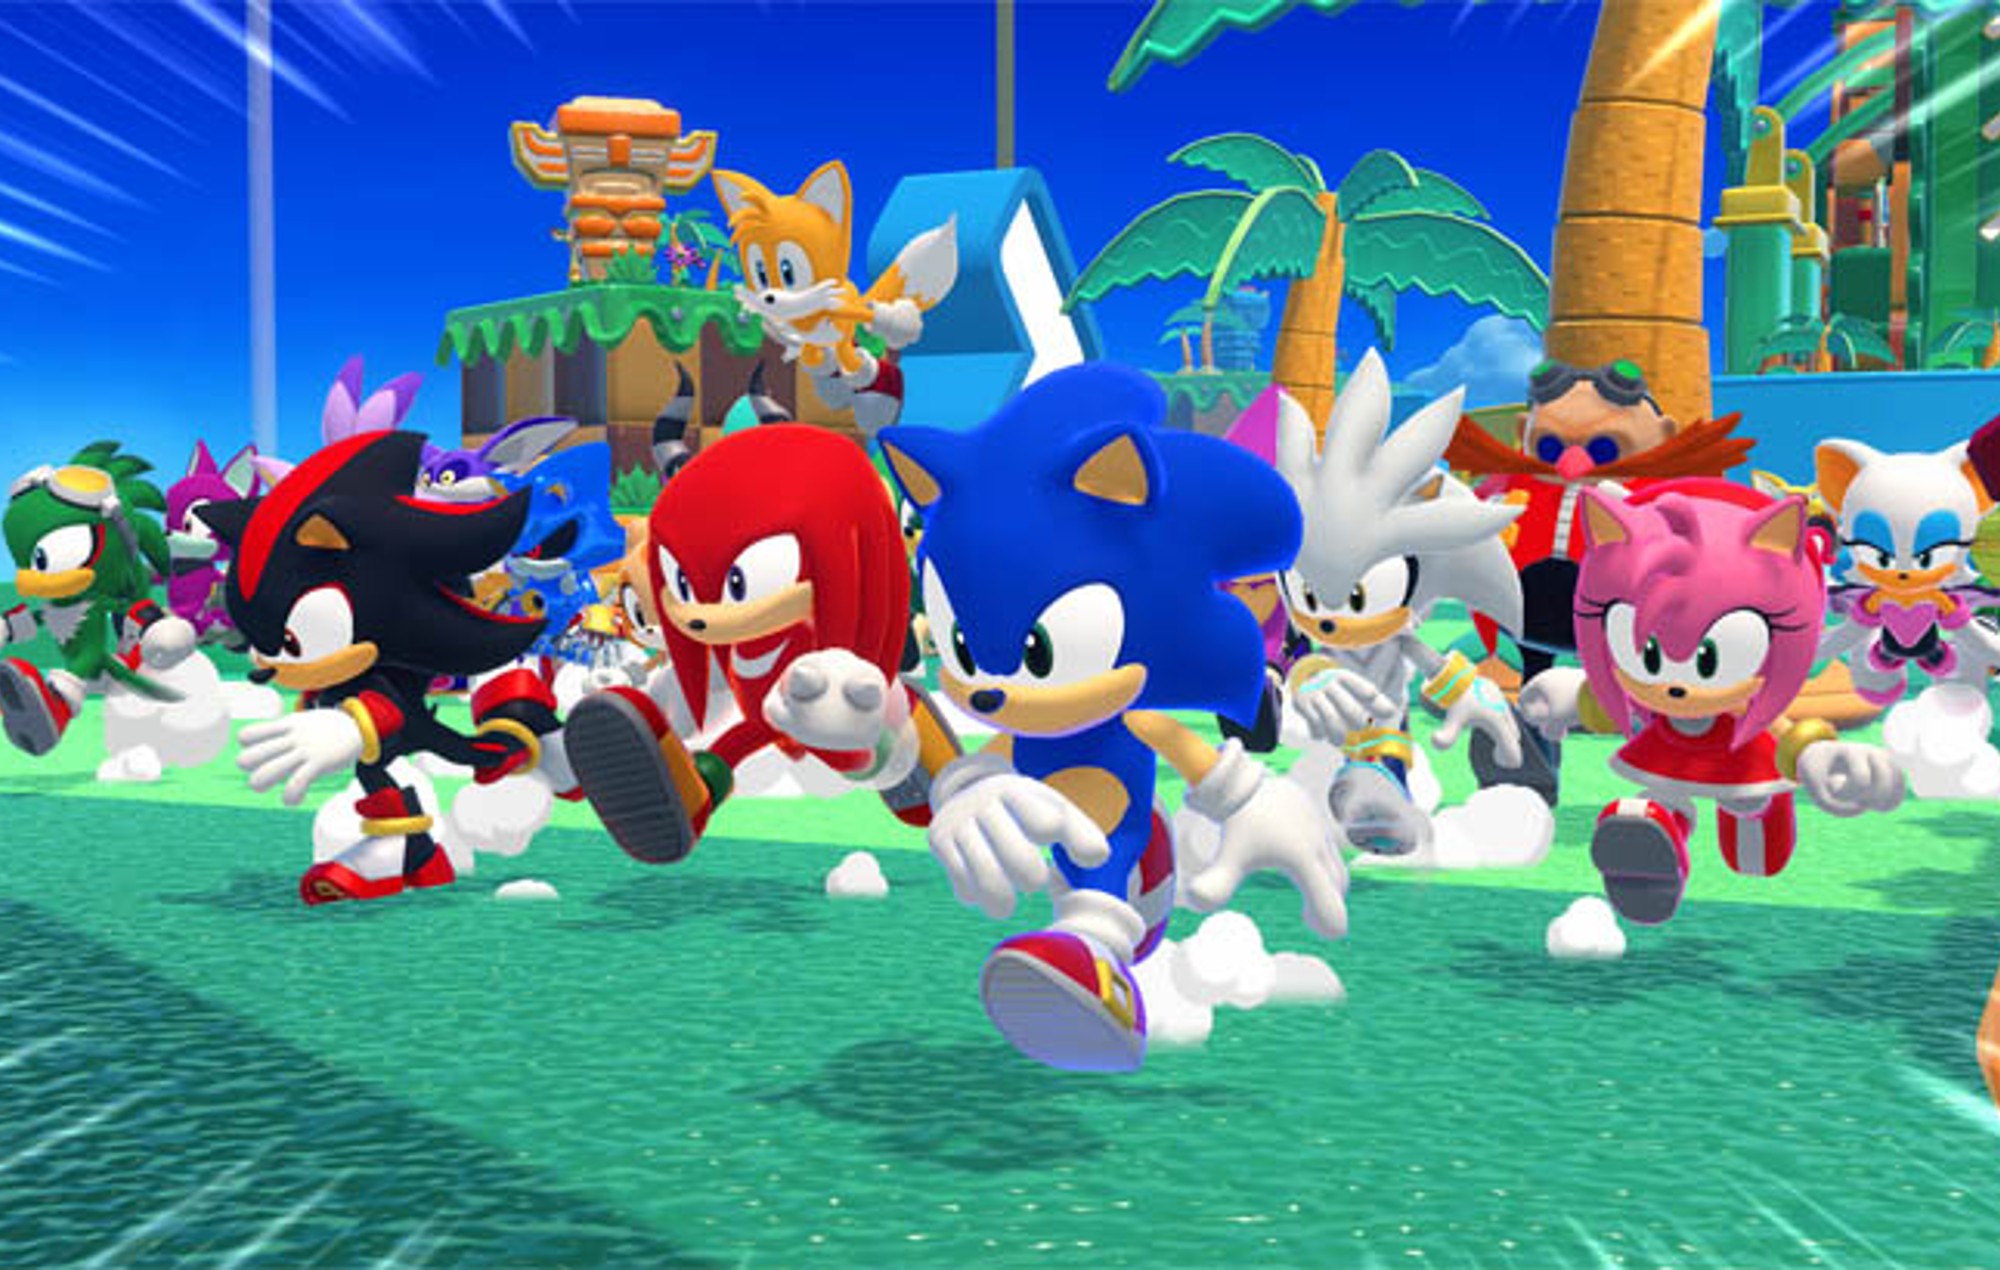 Sega confirma un nuevo juego battle royale de 'Sonic The Hedgehog' para móviles